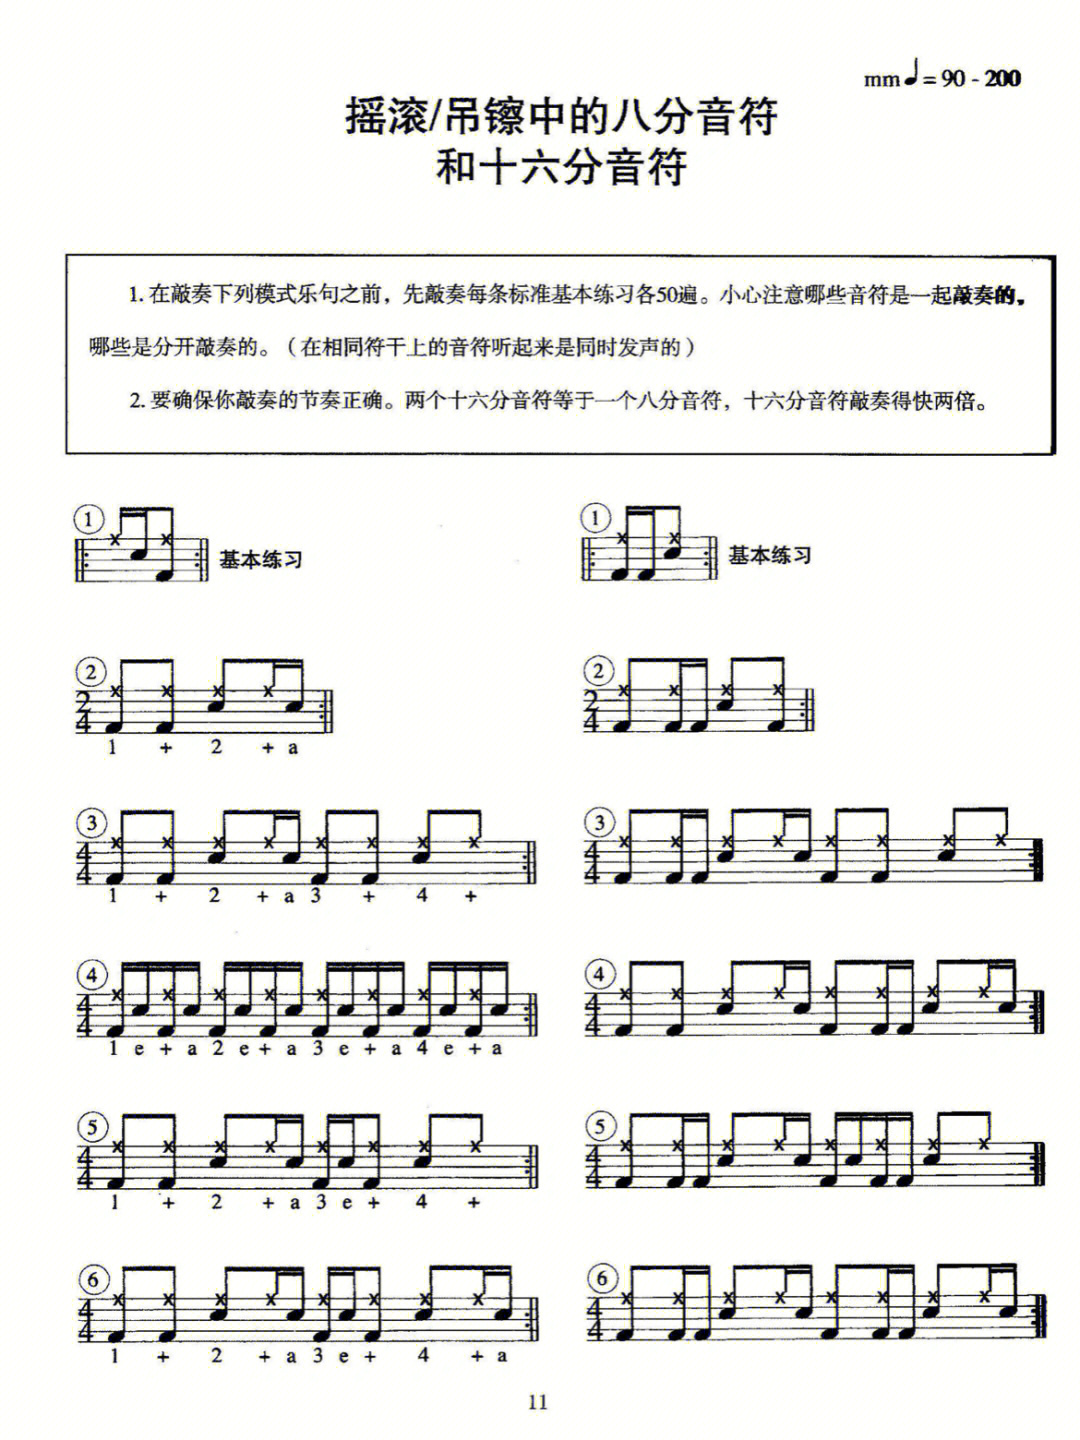 三拍子节奏型示意图图片